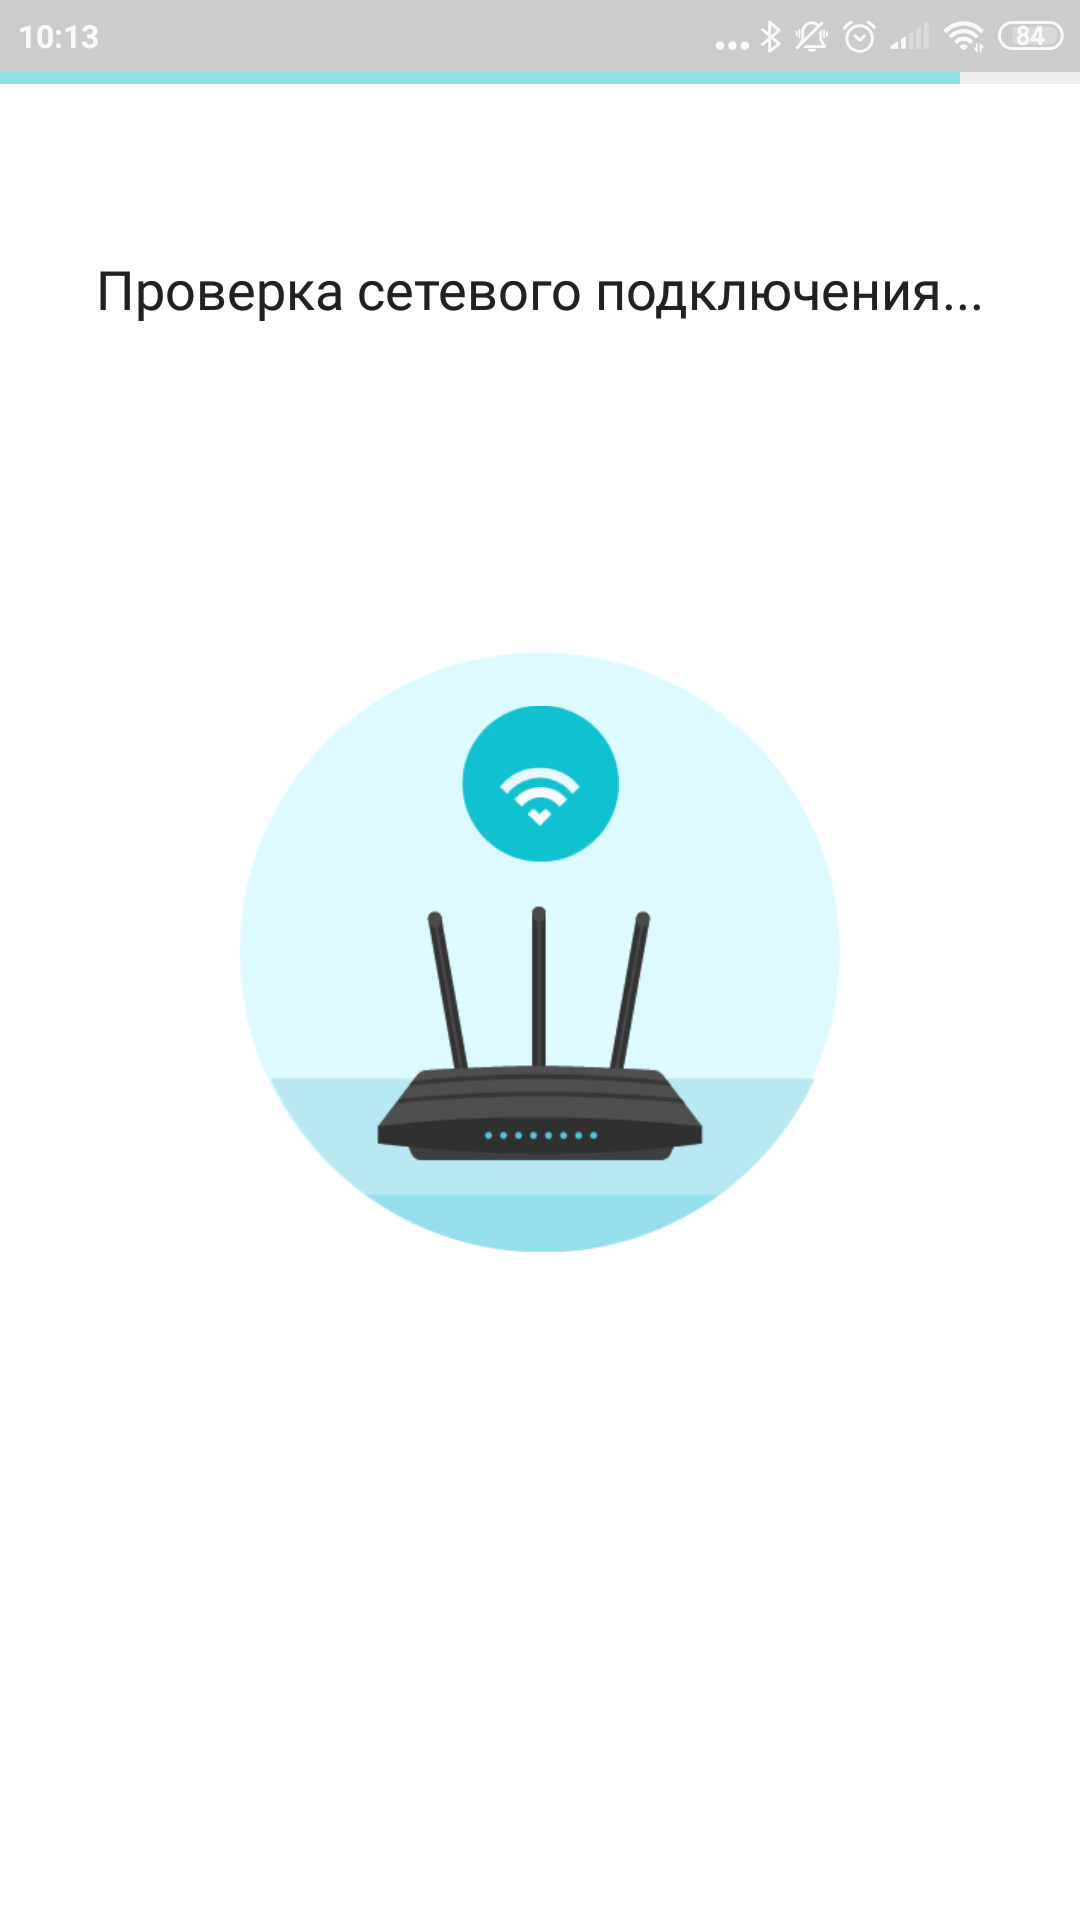 Recensione TP-Link Archer AX10: router Wi-Fi 6 più economico di 50 €-41